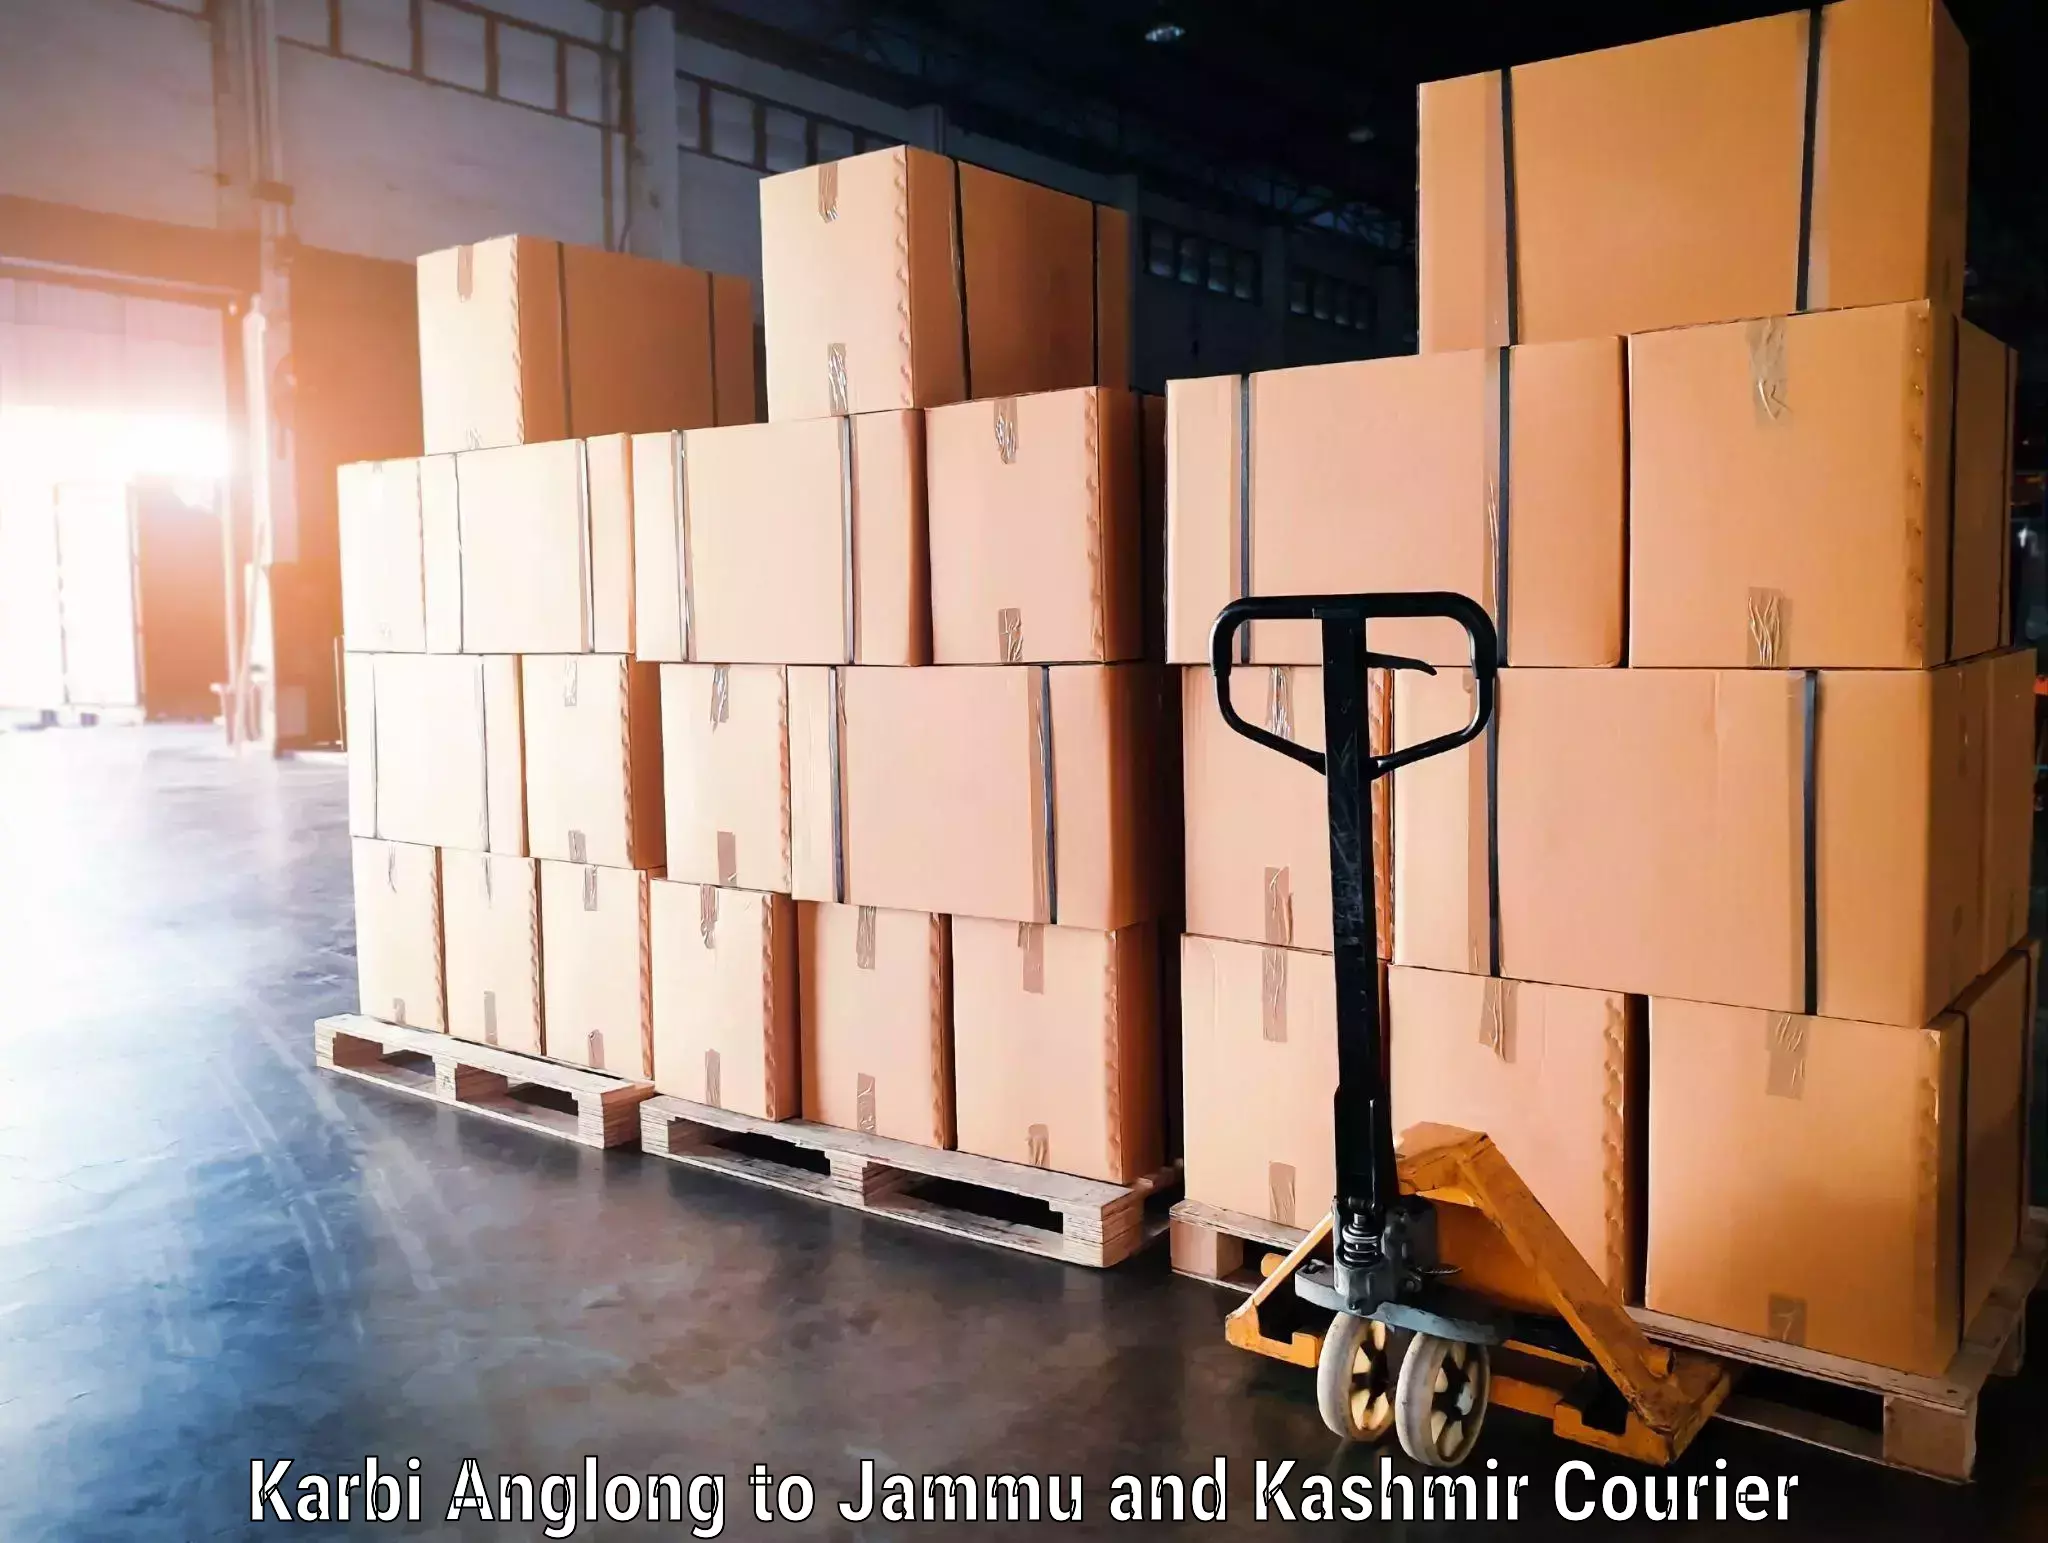 Baggage shipping experts Karbi Anglong to Bhaderwah